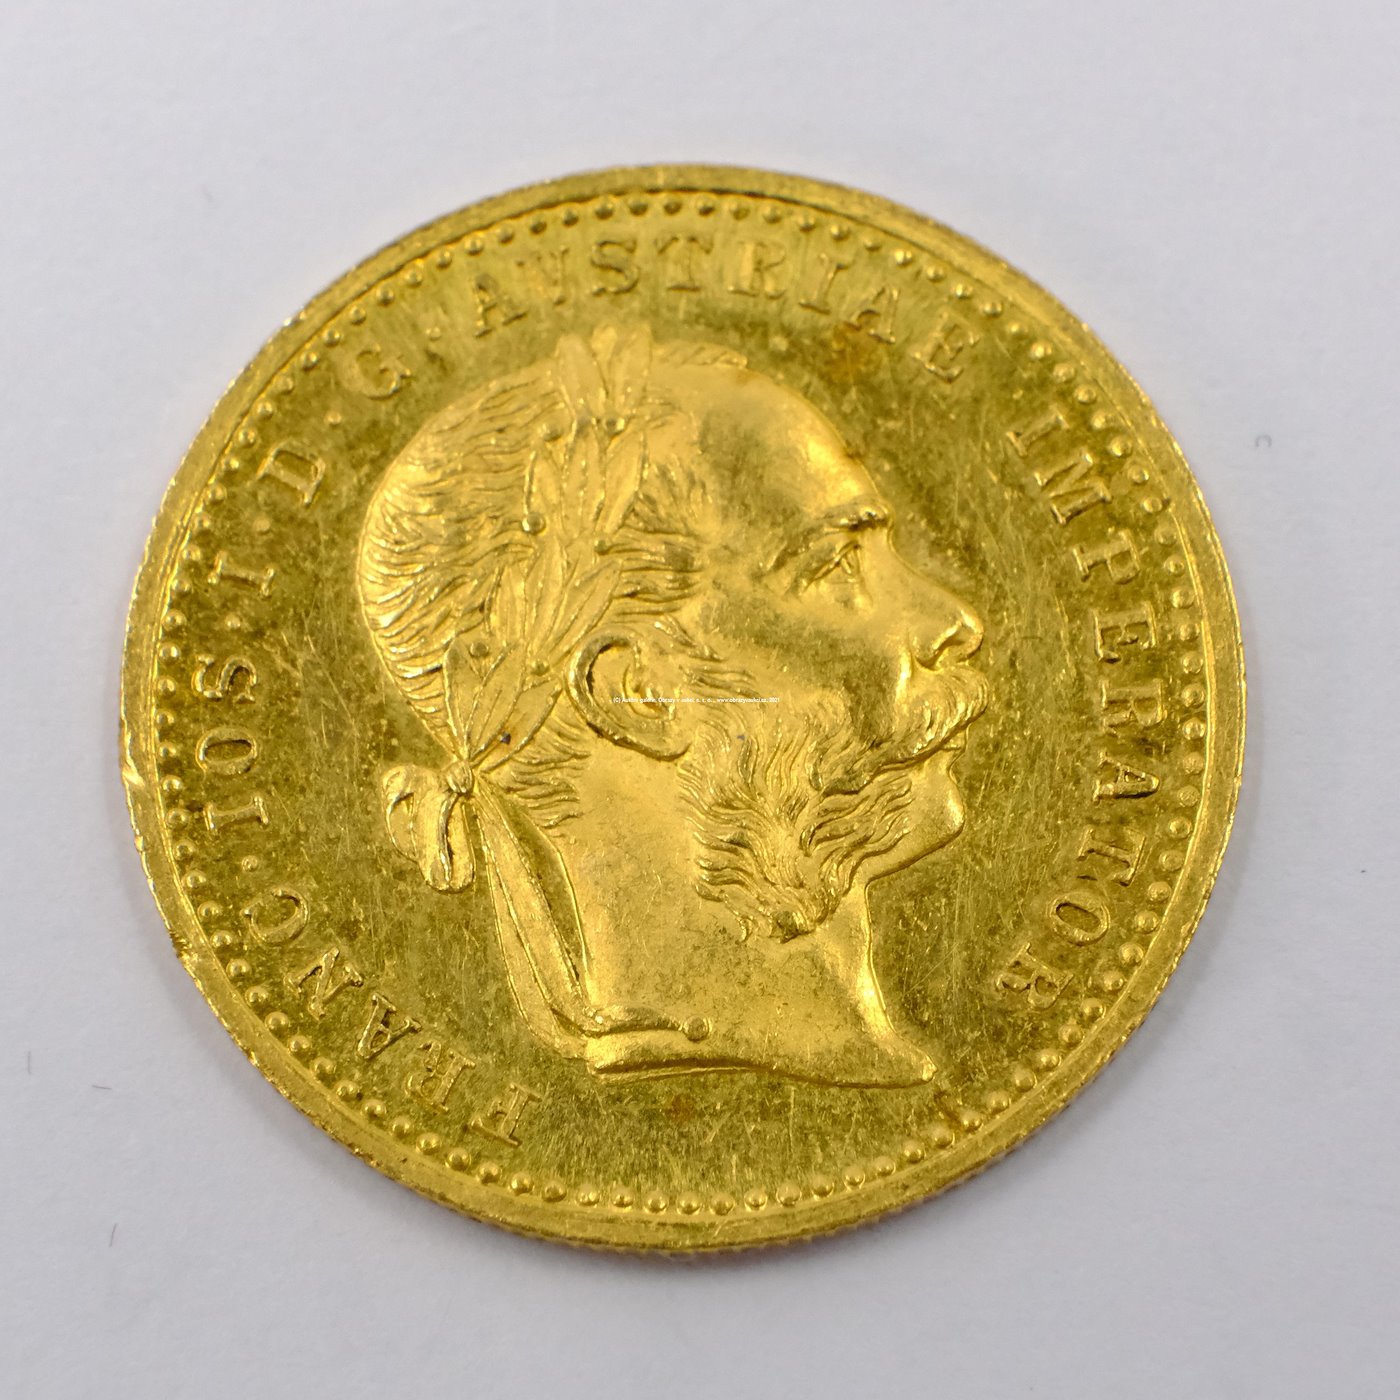 .. - Rakousko Uhersko zlatý 1 dukát 1914. Zlato 986/1000, hrubá hmotnost mince 3,491g,